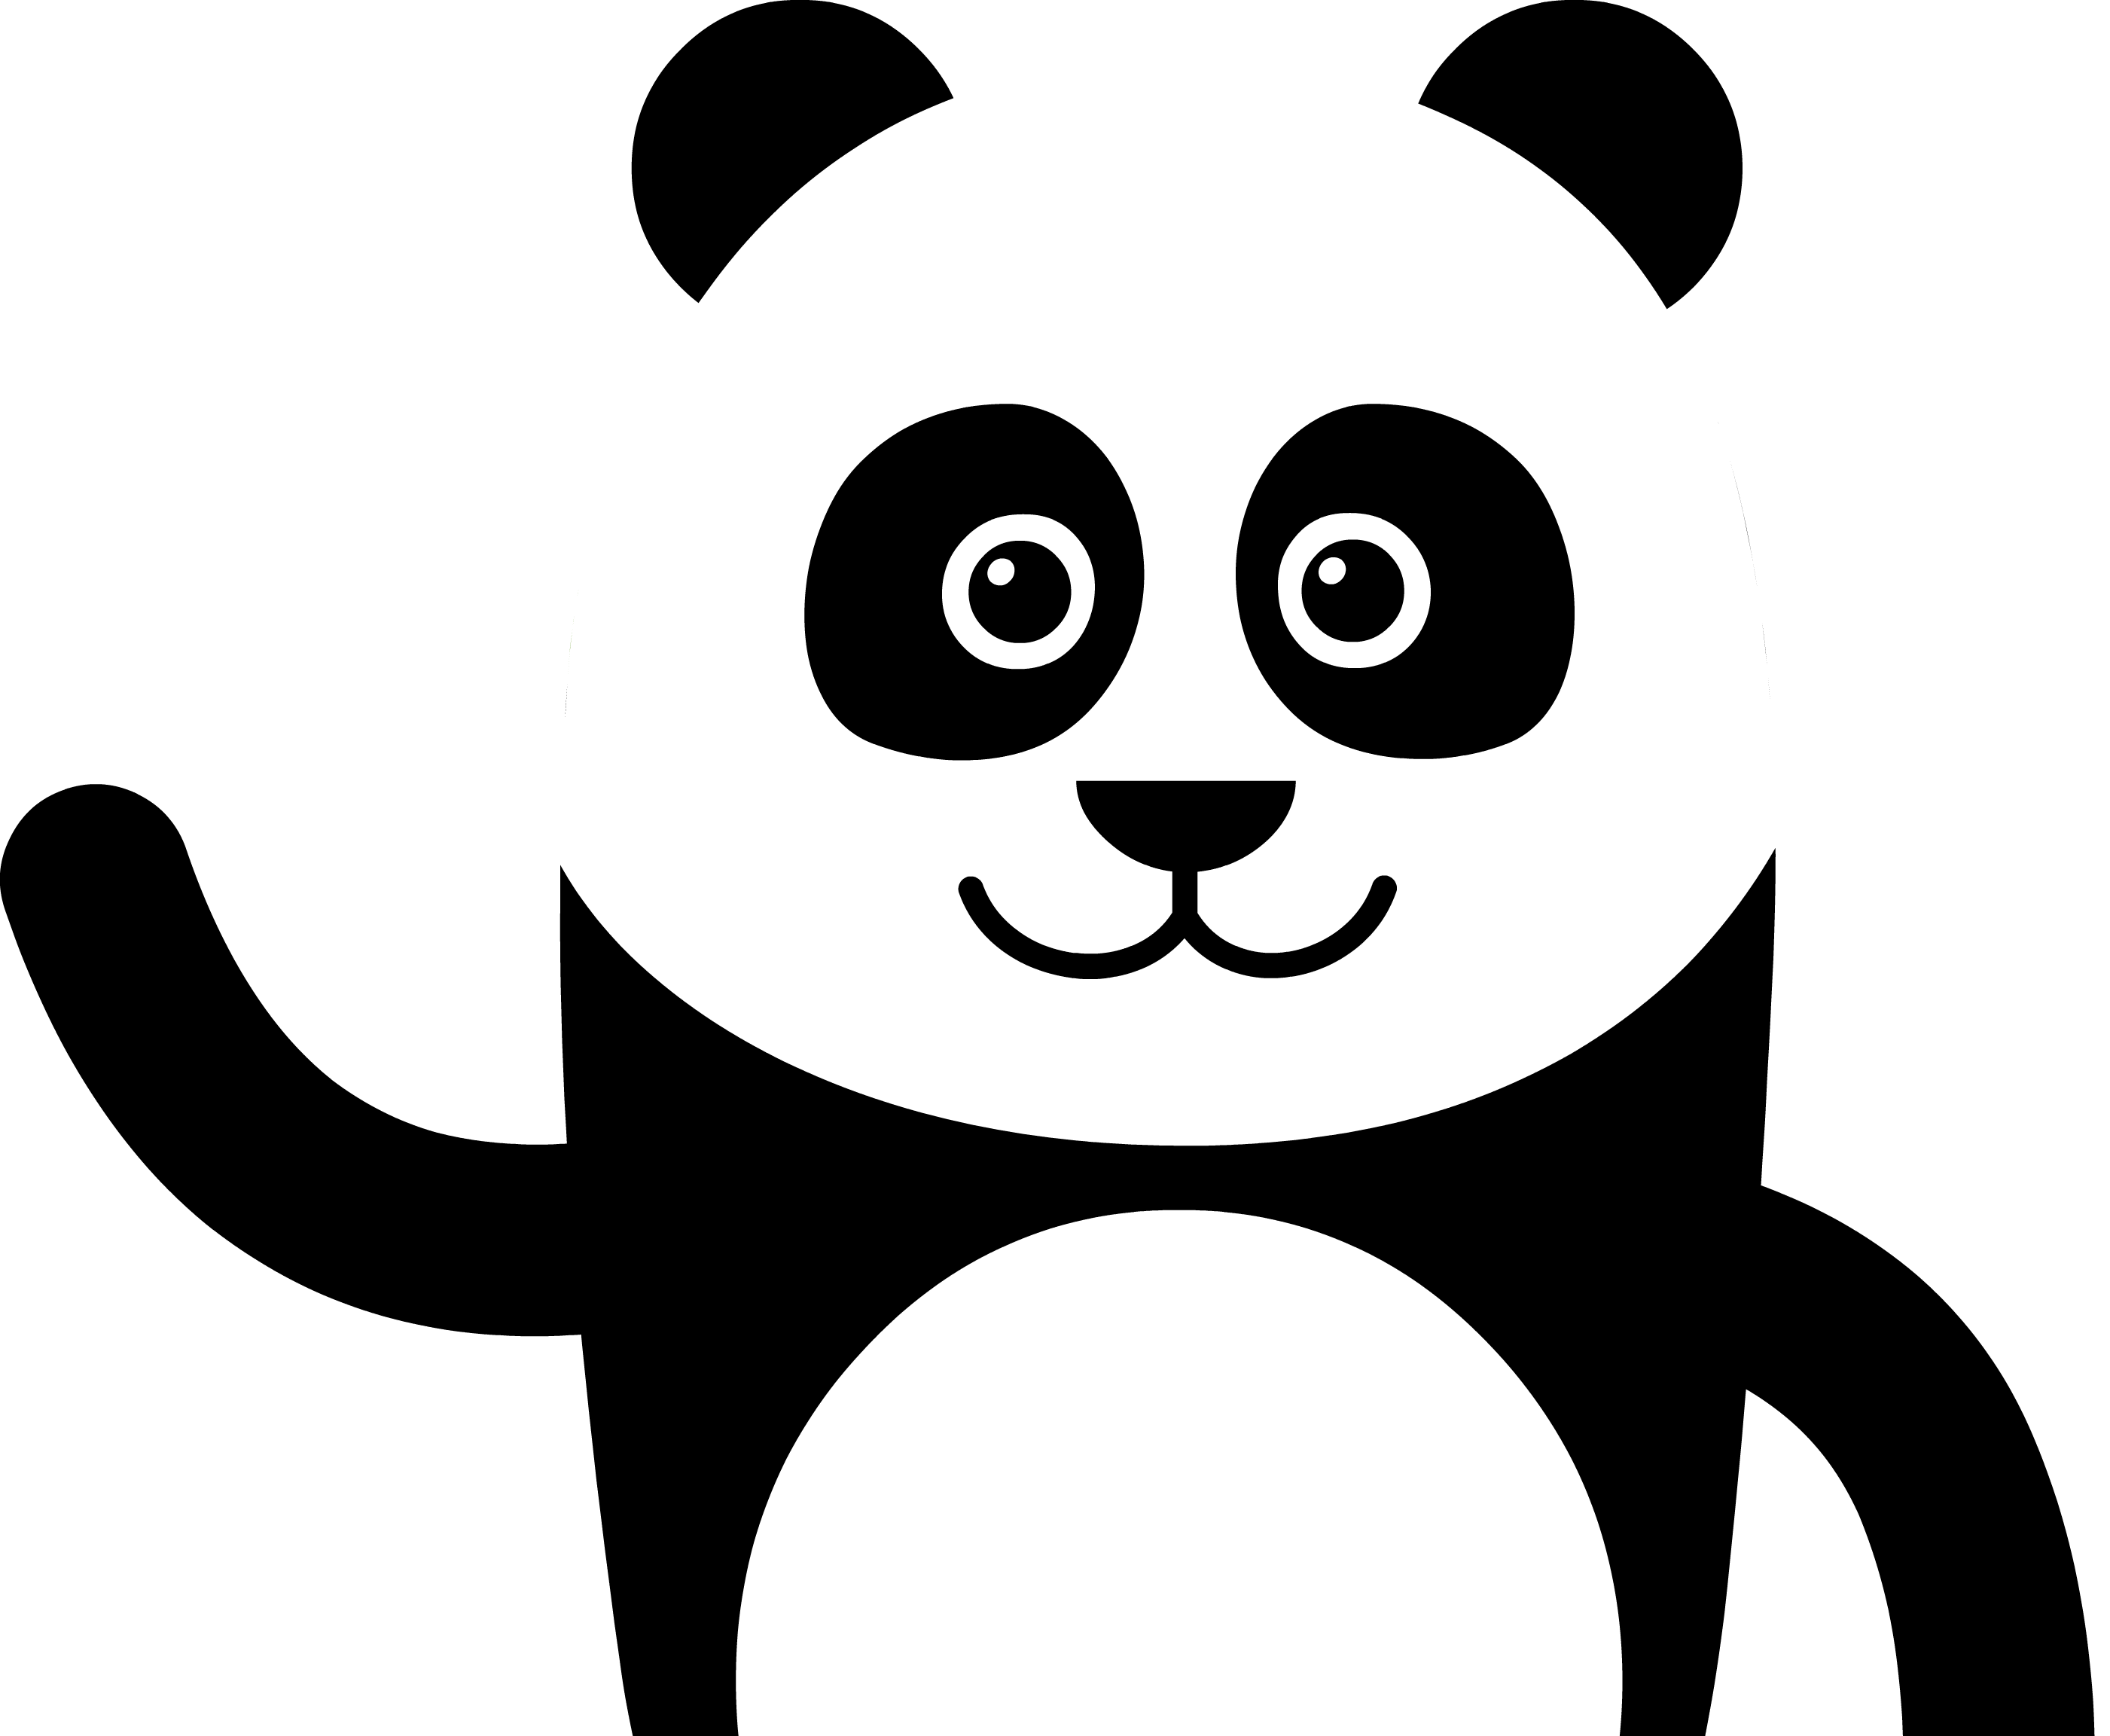 Panda PNG Background Image